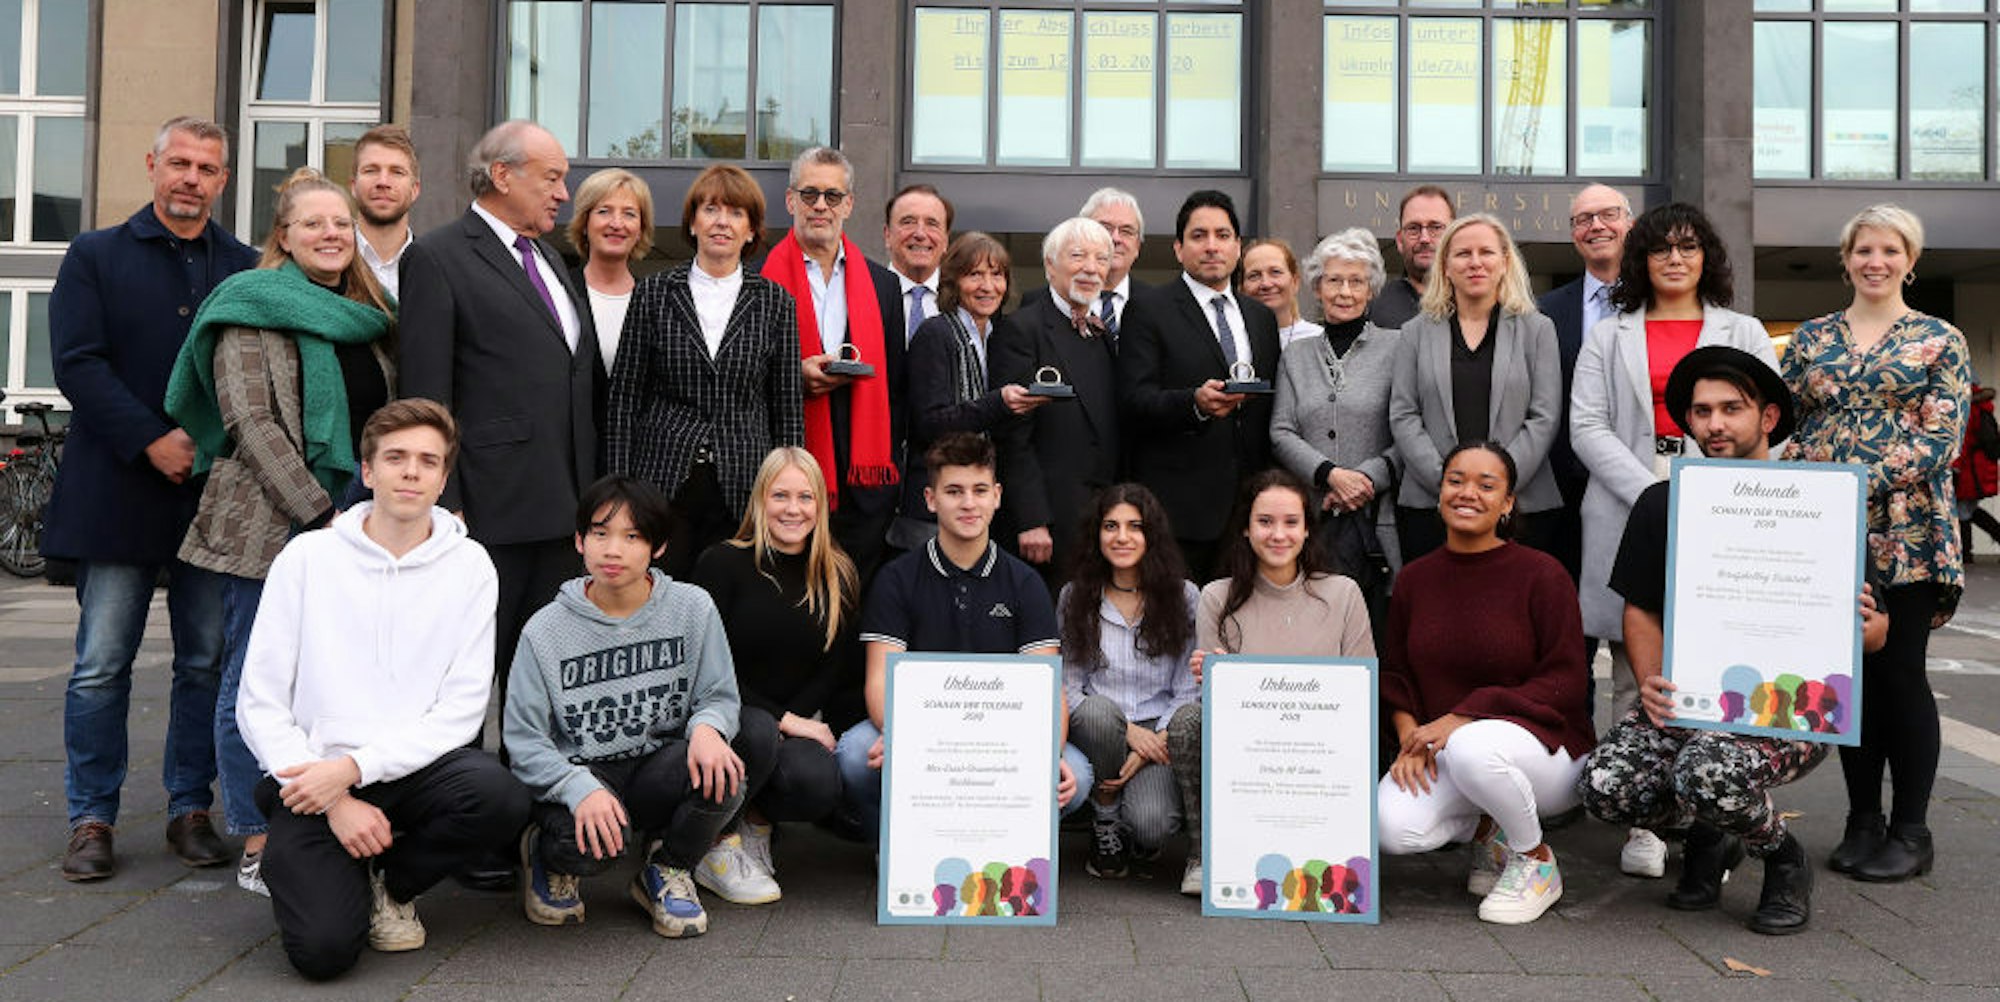 Preisträger vor der Universität: Neben Oberbürgermeisterin Henriette Reker stehen Richard C. Schneider, Jan und Aleida Assmann und Mouhanad Khorchide